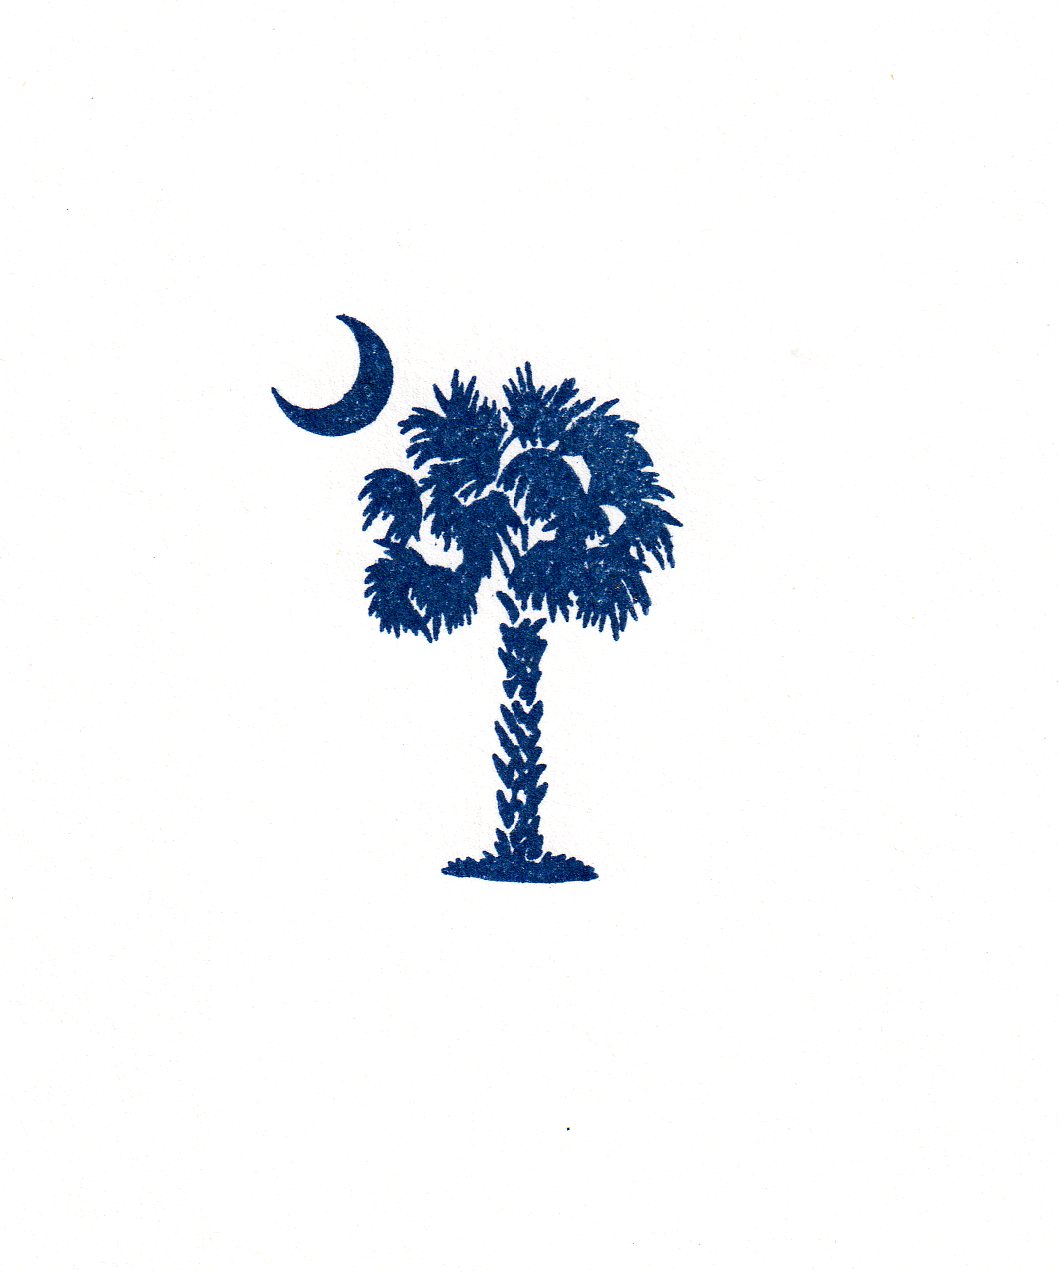 South Carolina Flag Clipart